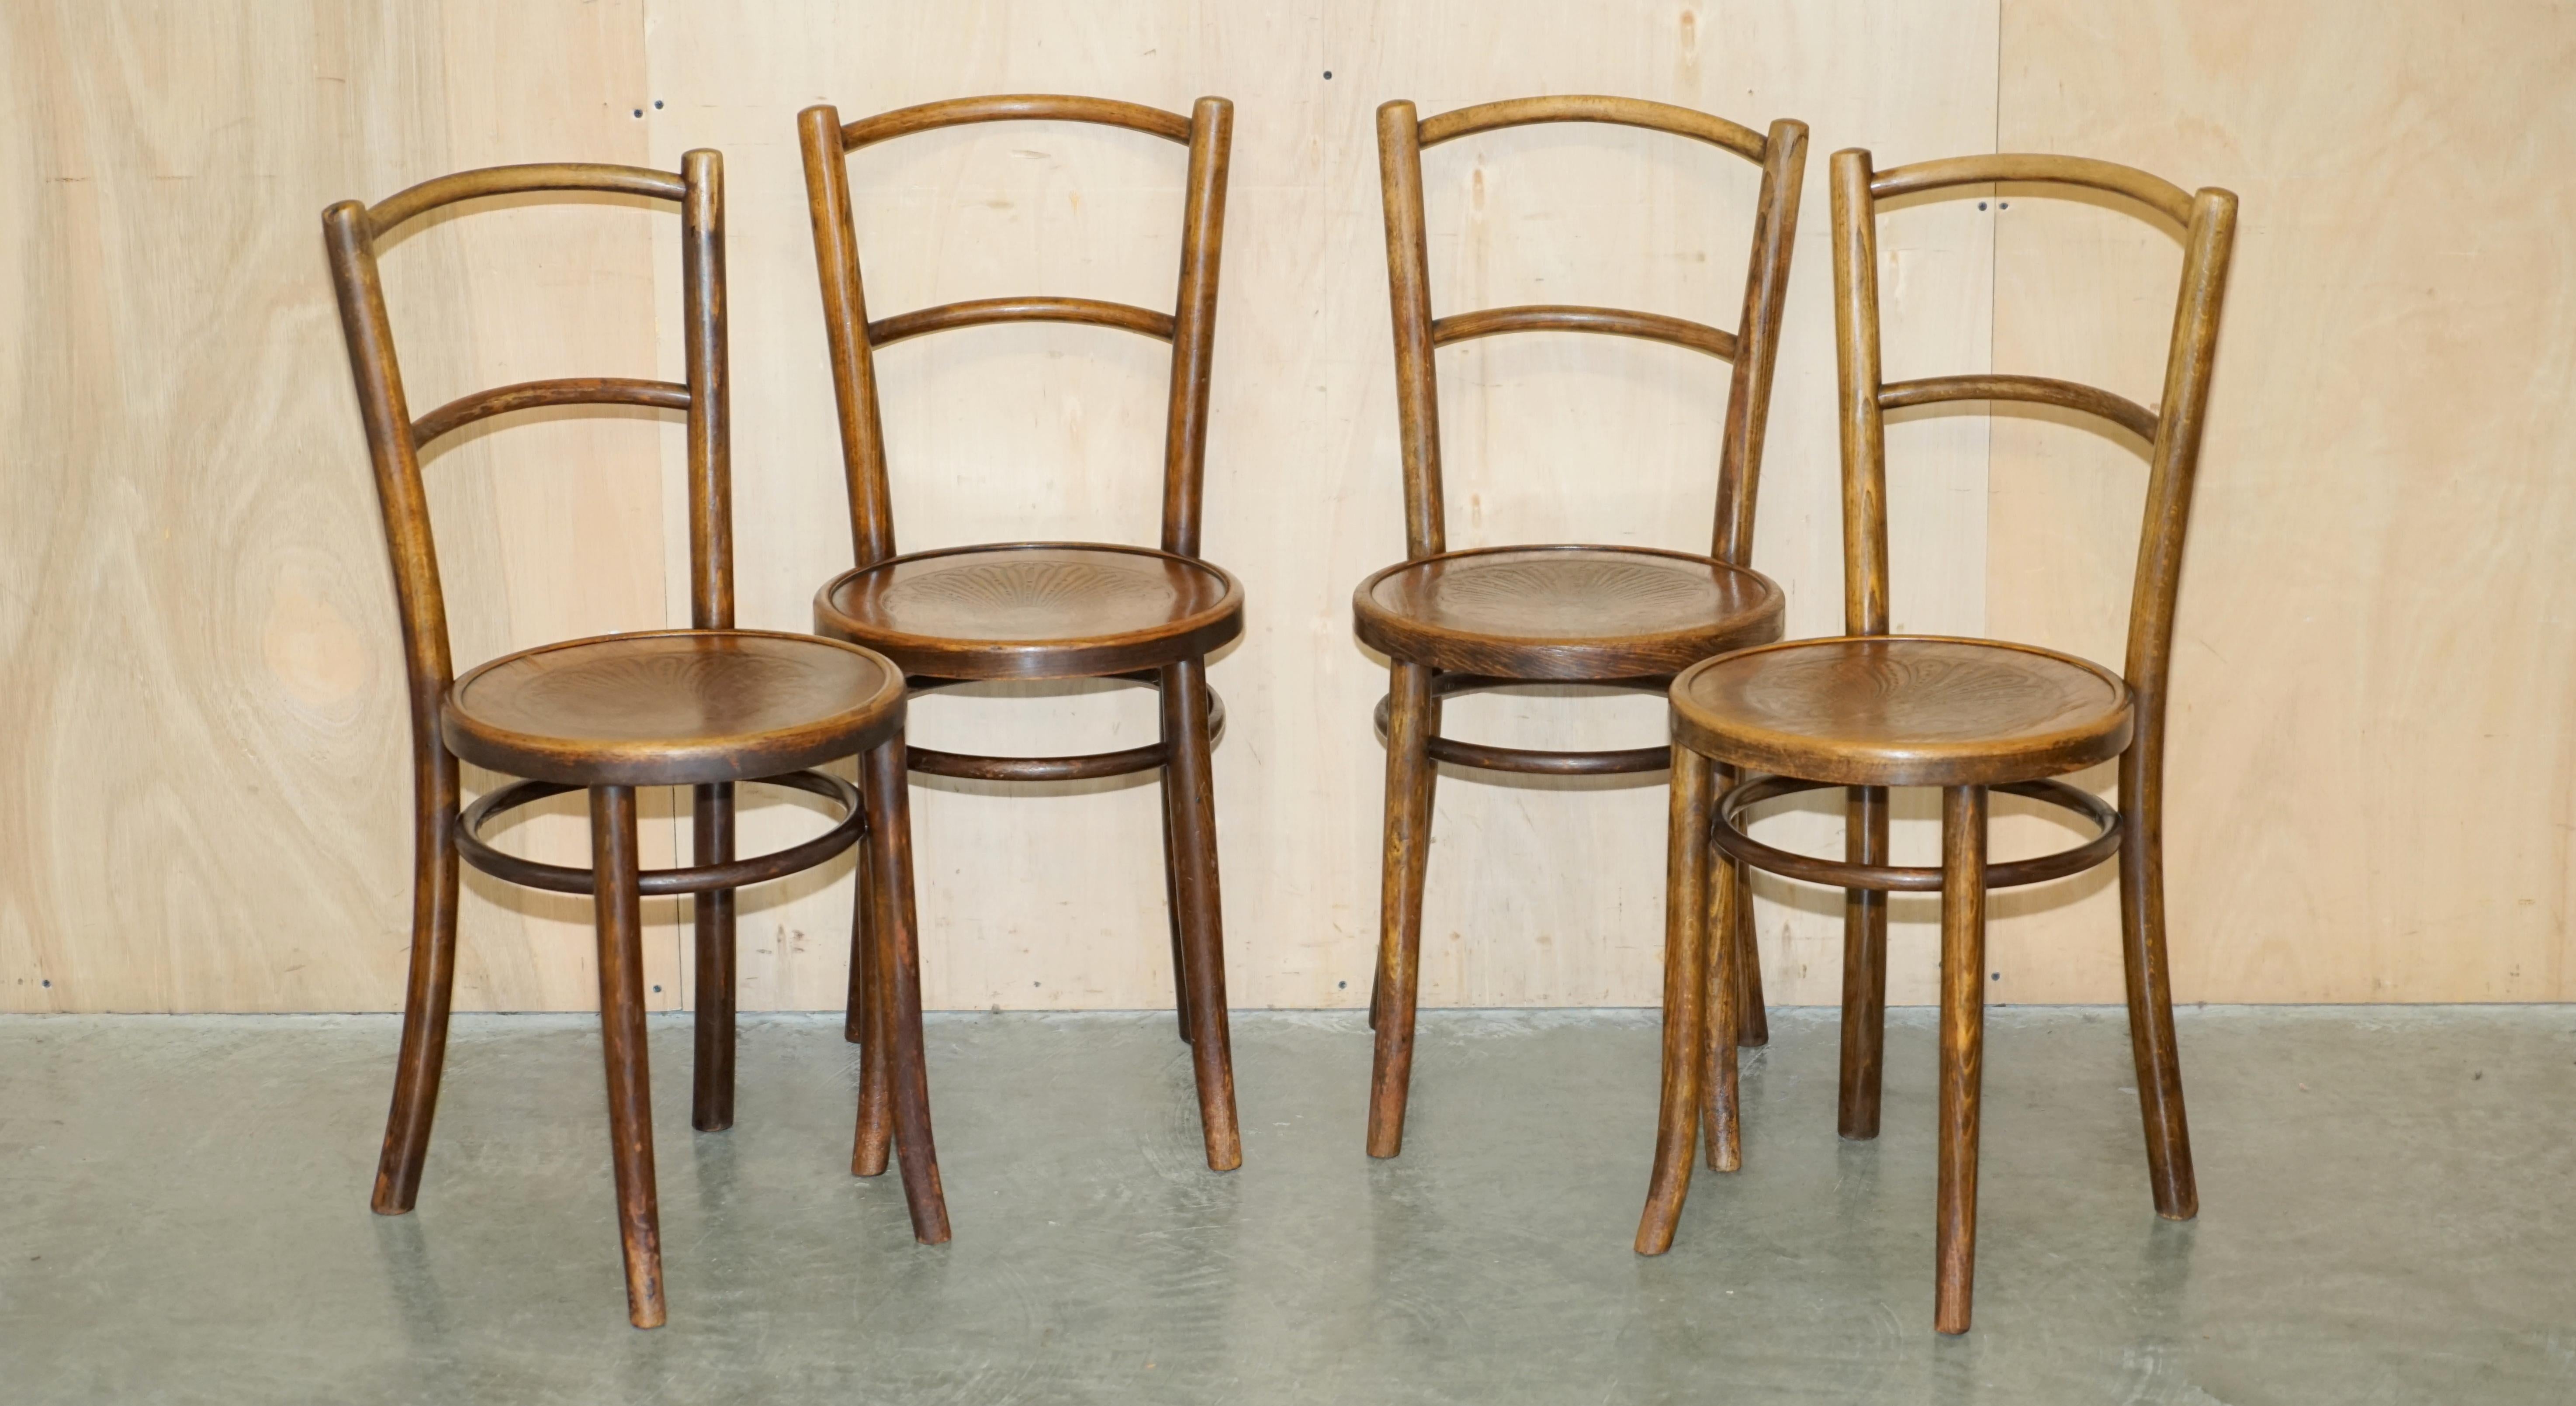 Royal House Antiques

Royal House Antiques freut sich, diese hübsche Garnitur von vier original österreichischen Thonet-Bugholz-Café-Bistro-Stühlen aus den 1930er Jahren zum Verkauf anzubieten.

Bitte beachten Sie die Liefergebühr aufgeführt ist nur